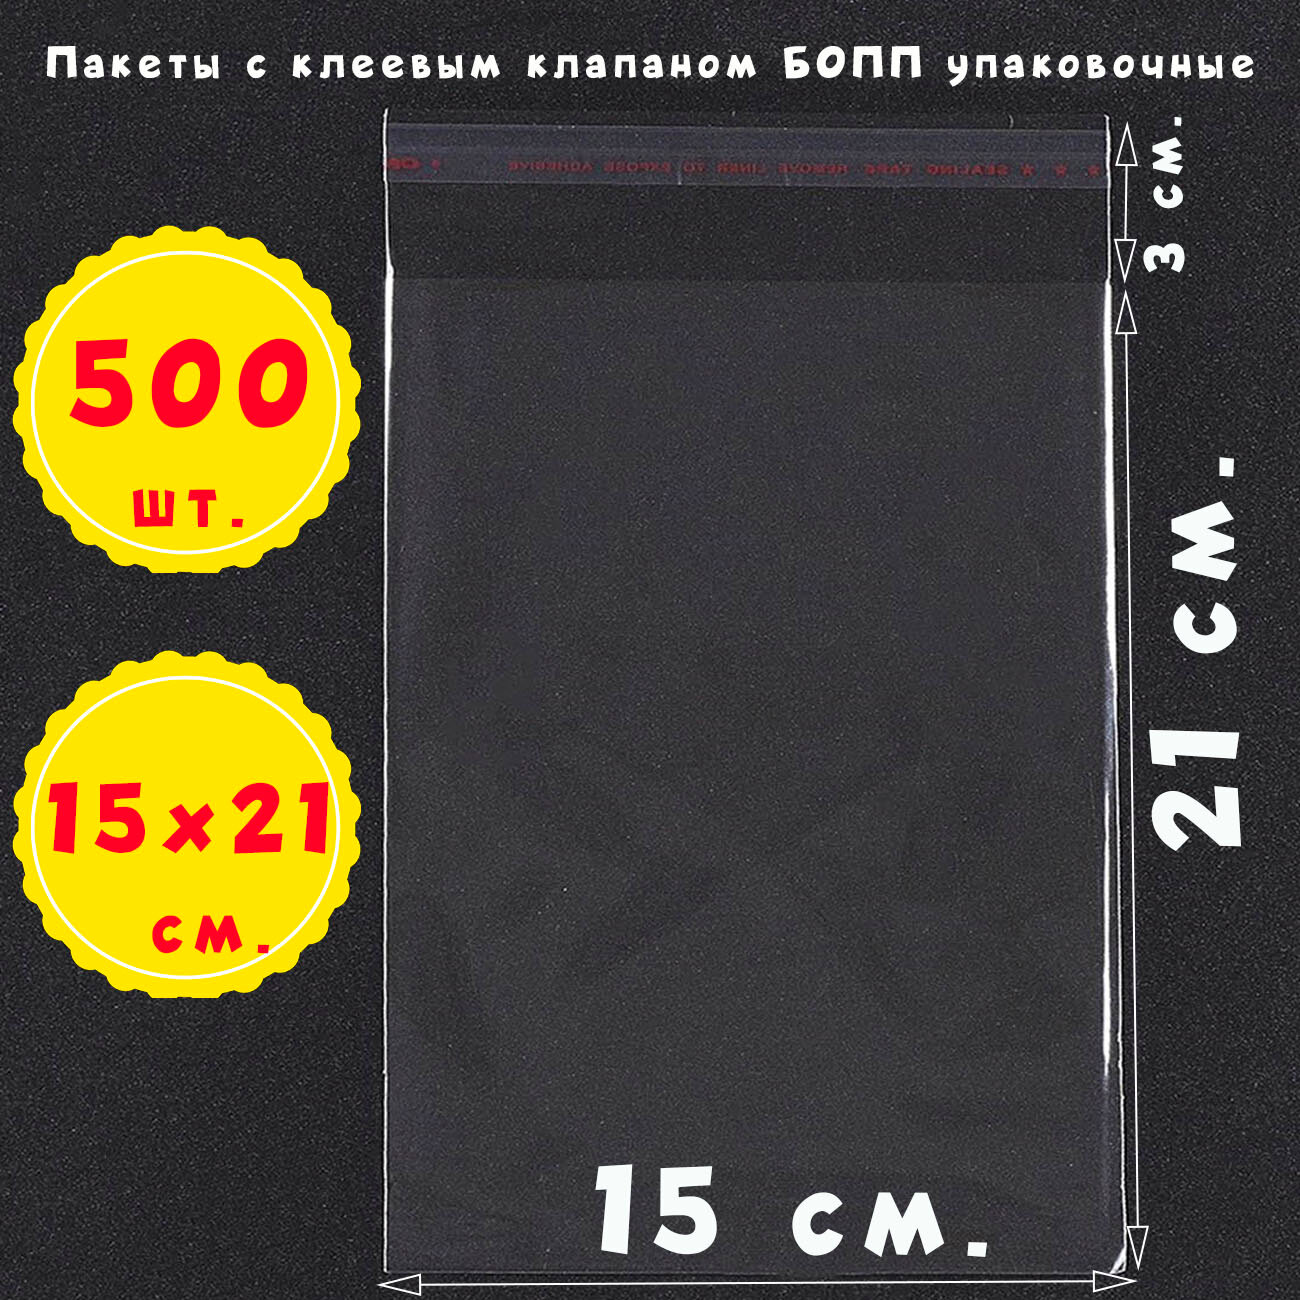 500 пакетов 15х21+3 см прозрачных с клеевым клапаном для упаковки из пленки бопп